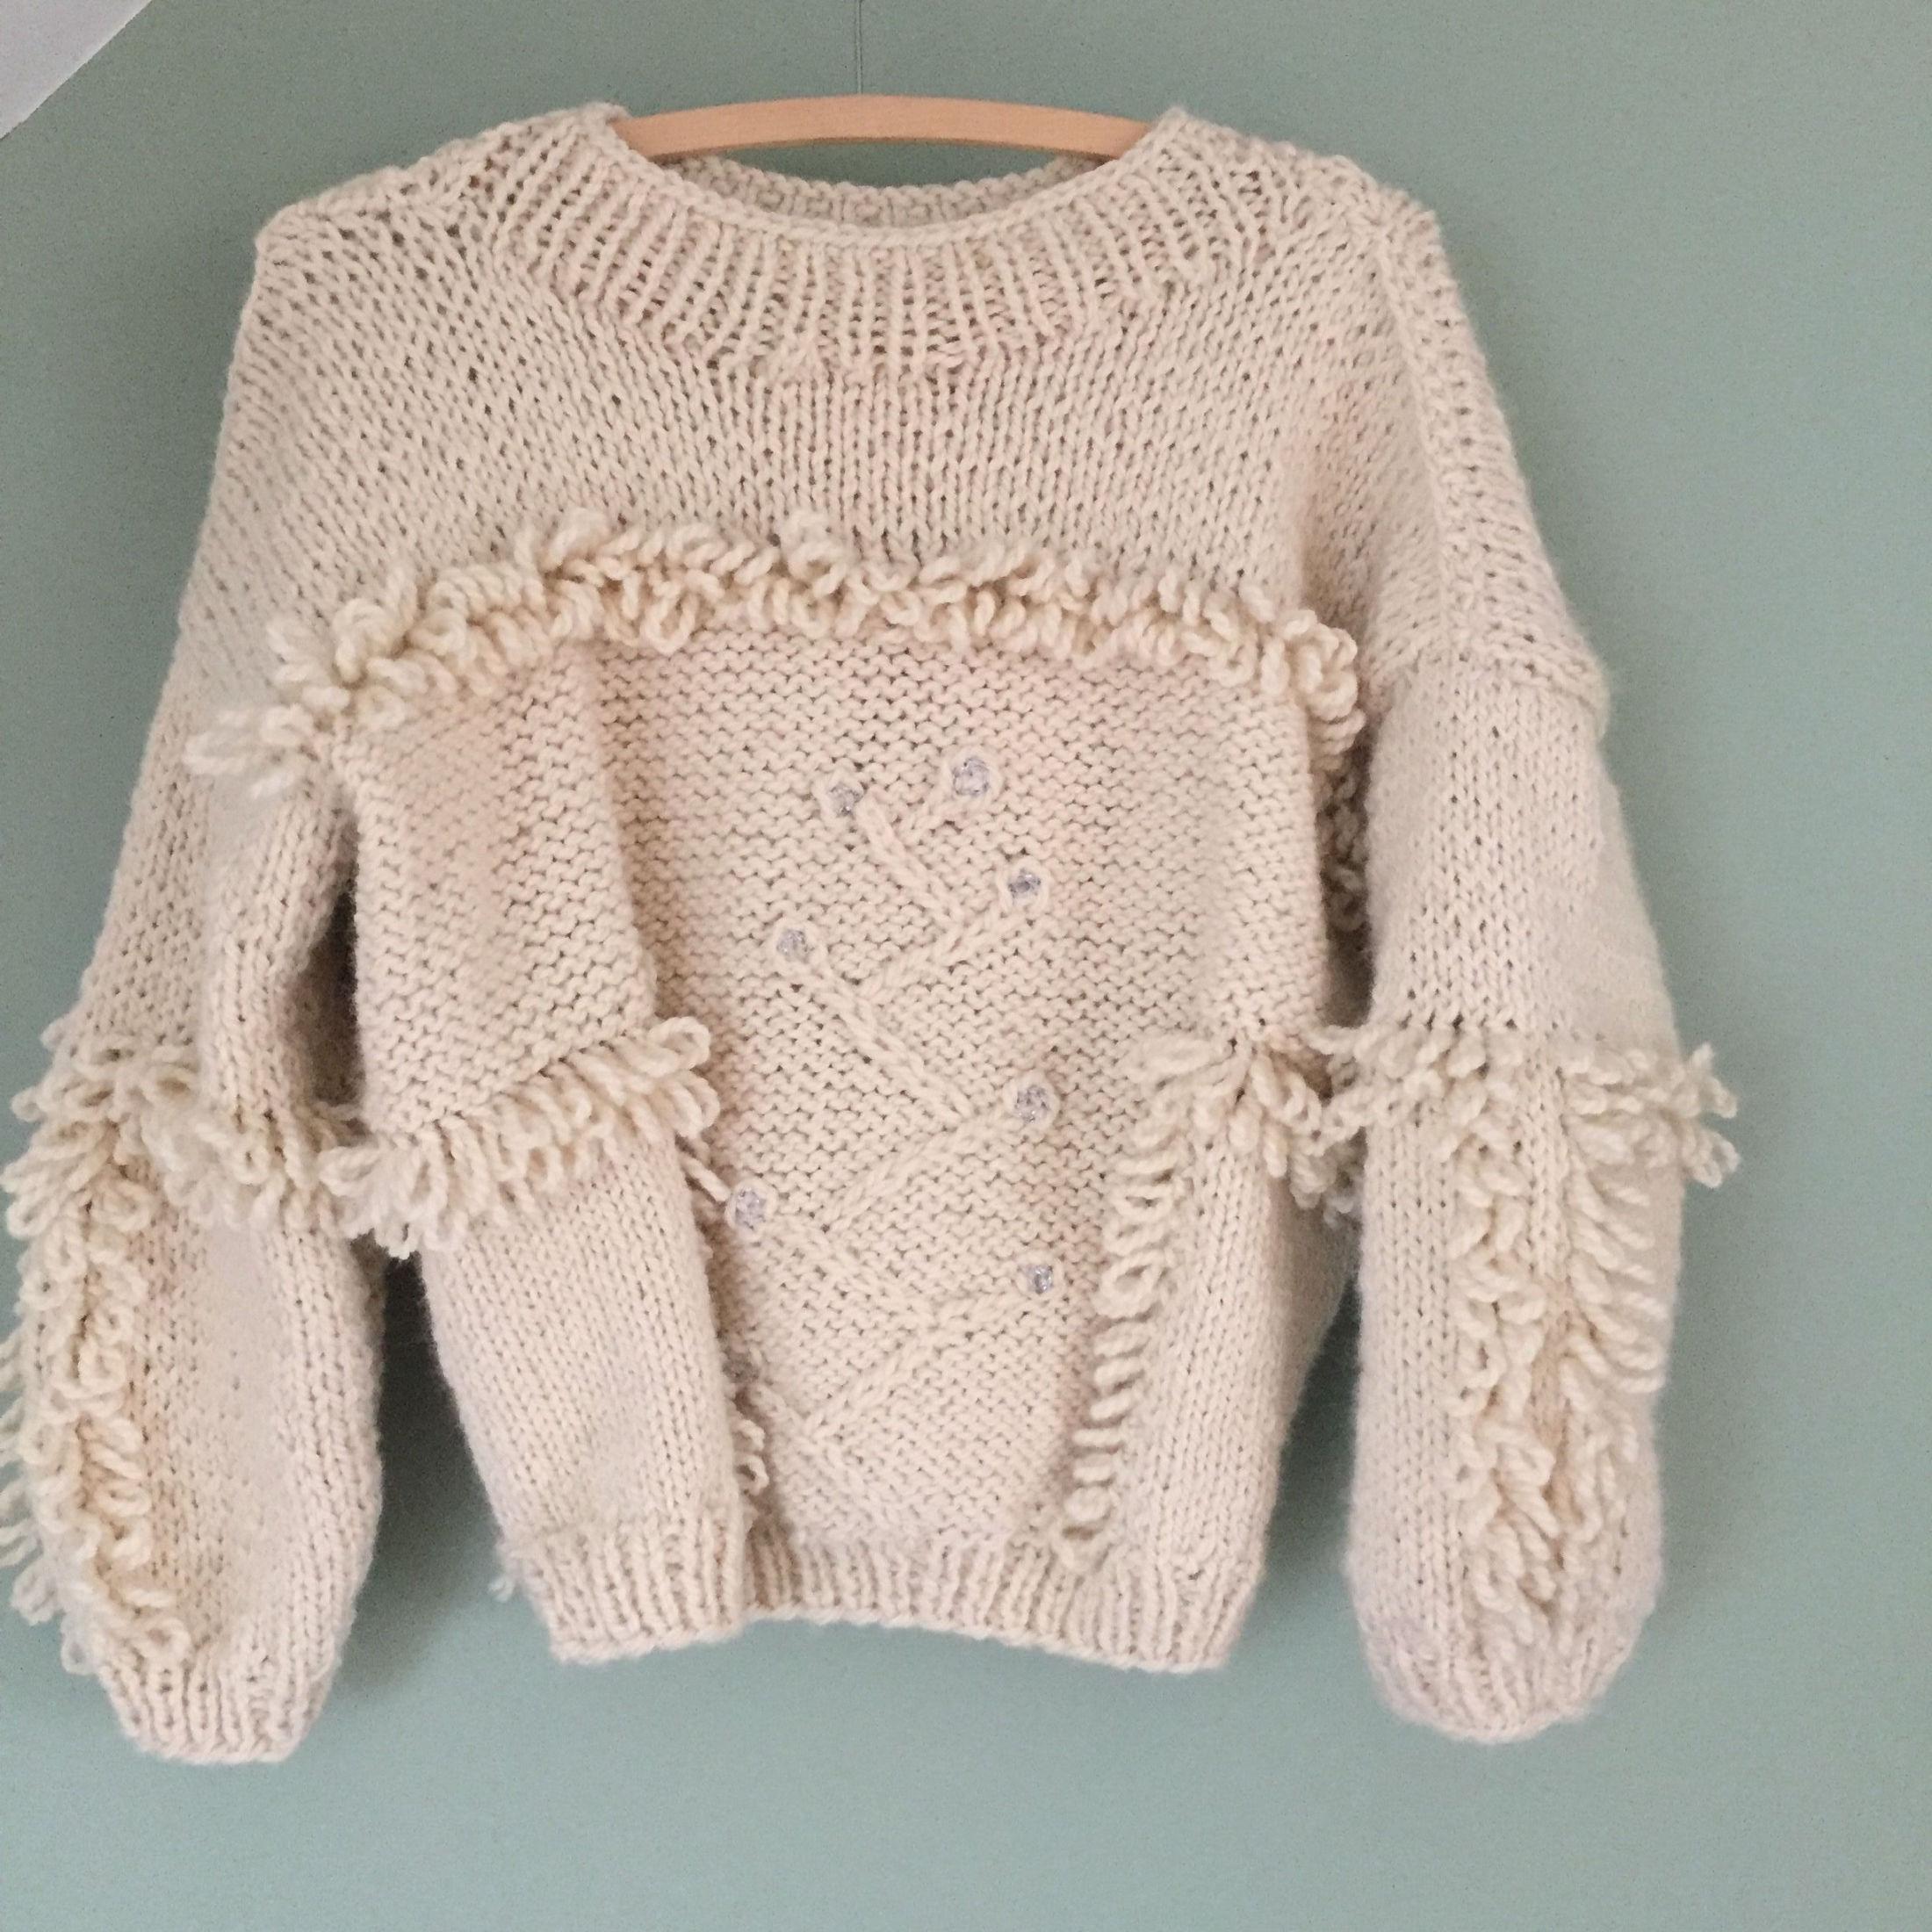 VARM OG KUL: Følger du oppskriften vil du få en genser som ligner denne. Foto: Privat.